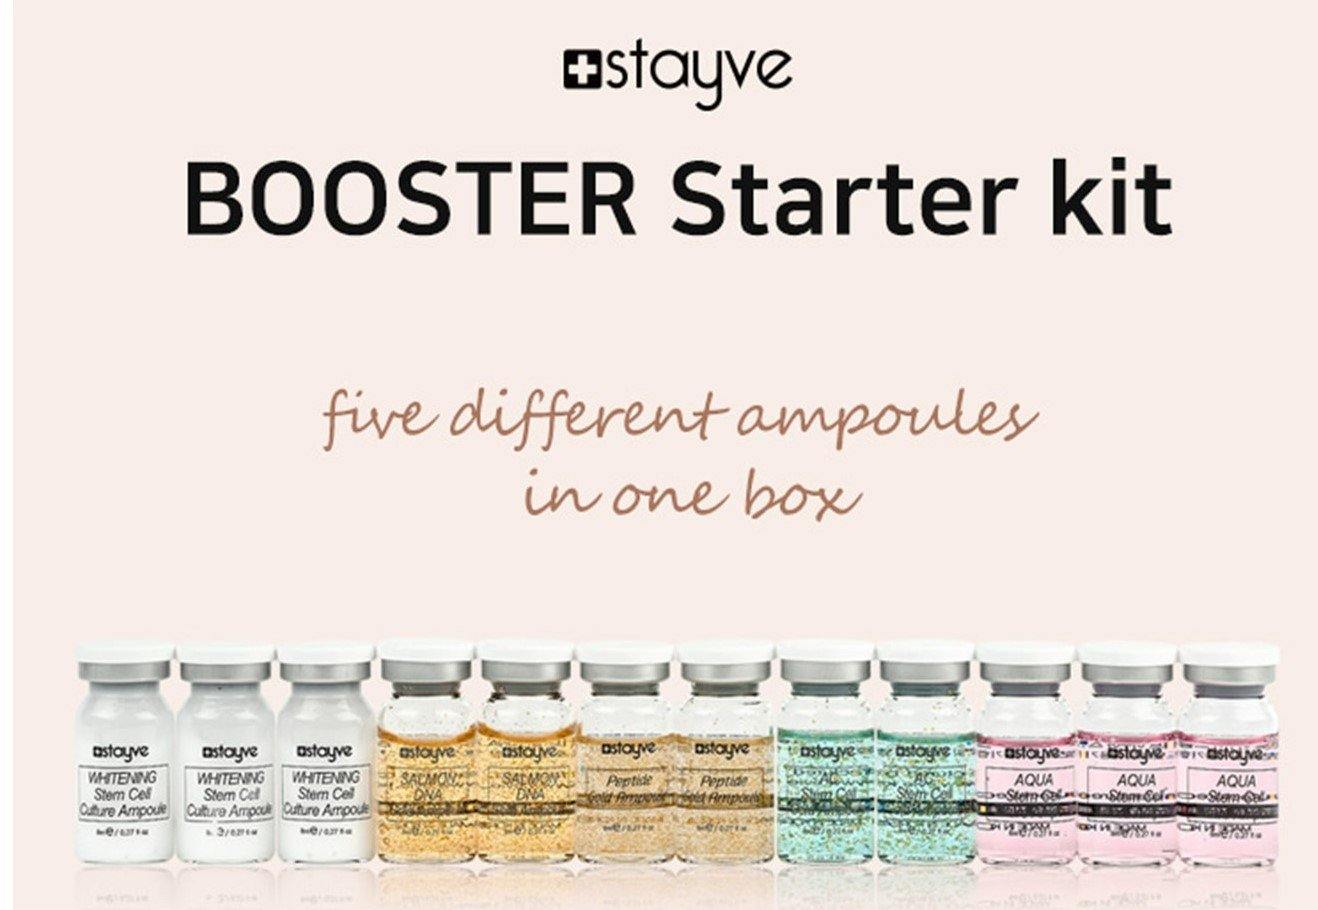 Booster Starter Kit I Stayve® - RG SUMINISTROS